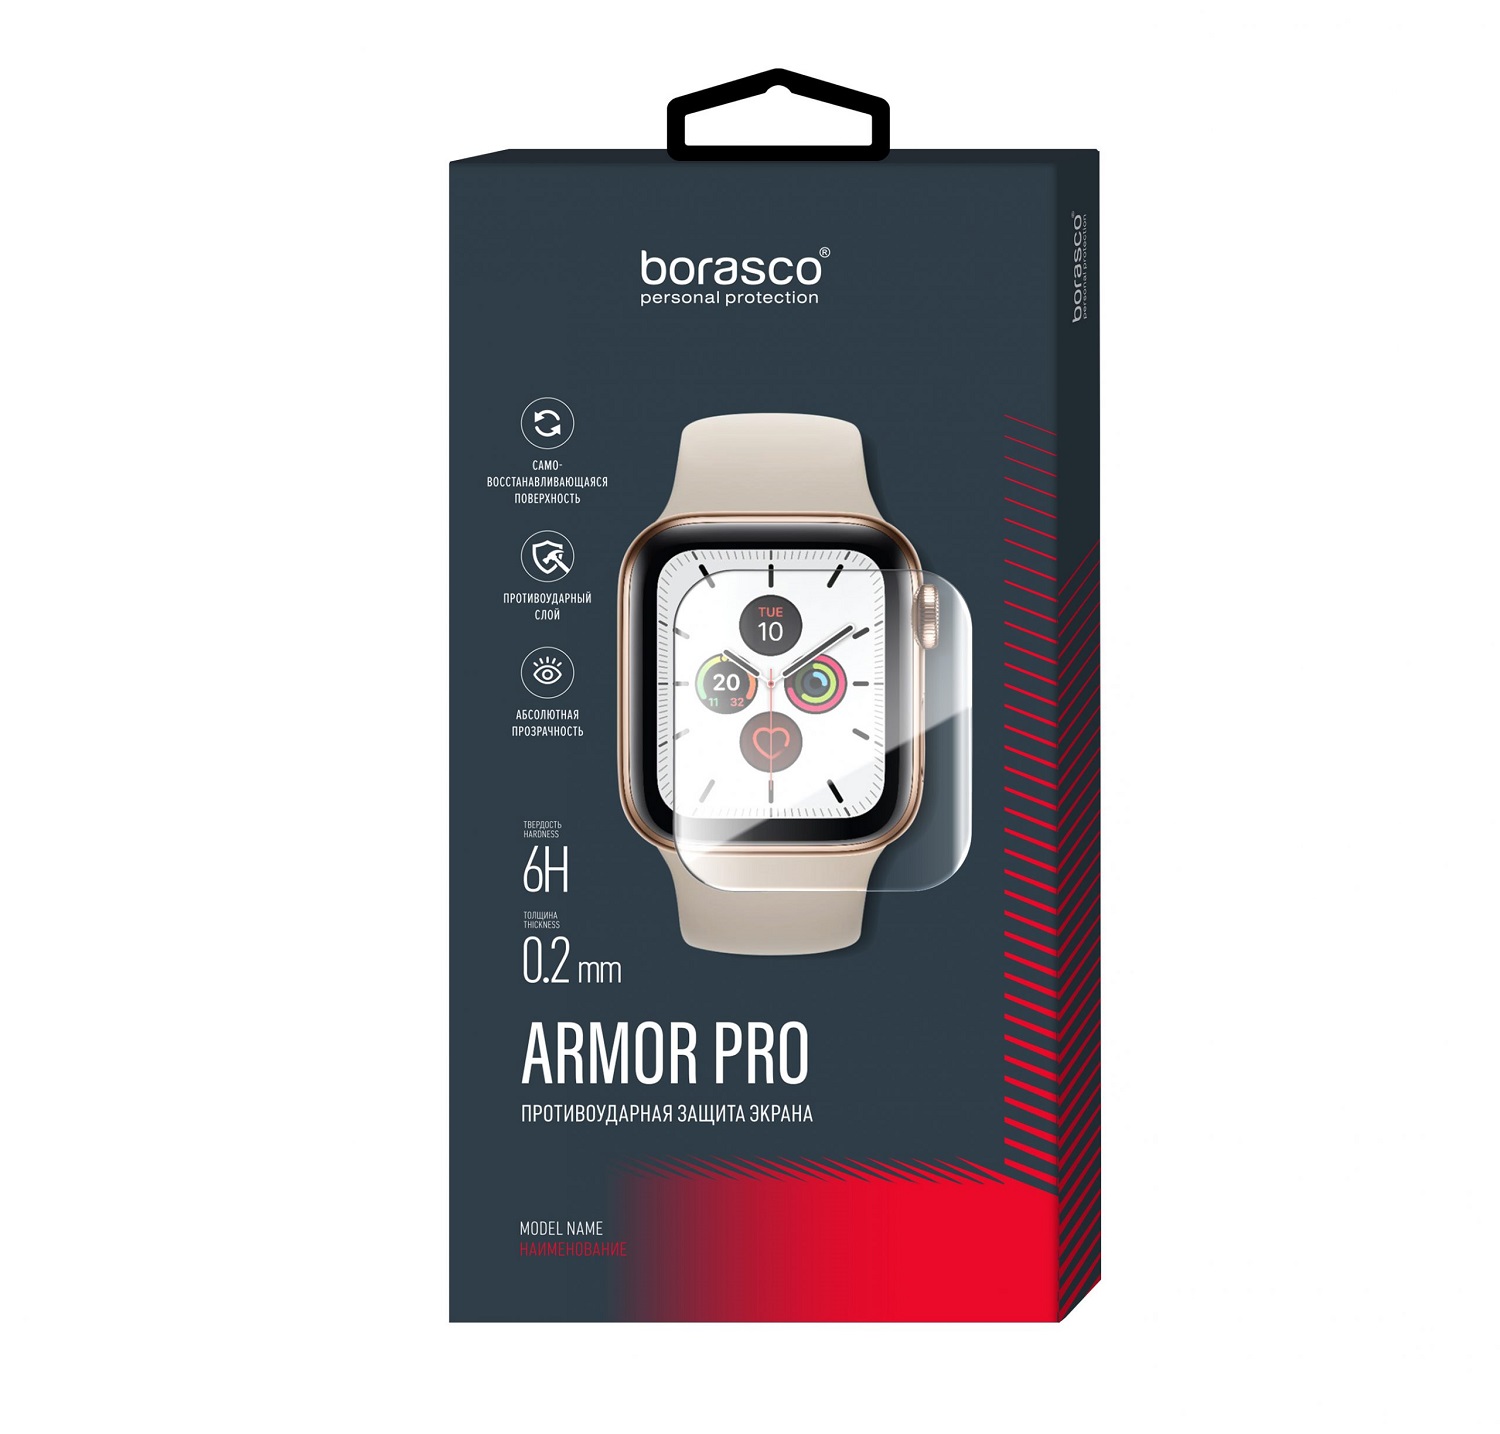 Защита экрана BoraSCO Armor Pro для Xiaomi Mi band 2 защита экрана borasco armor pro для honor band 3